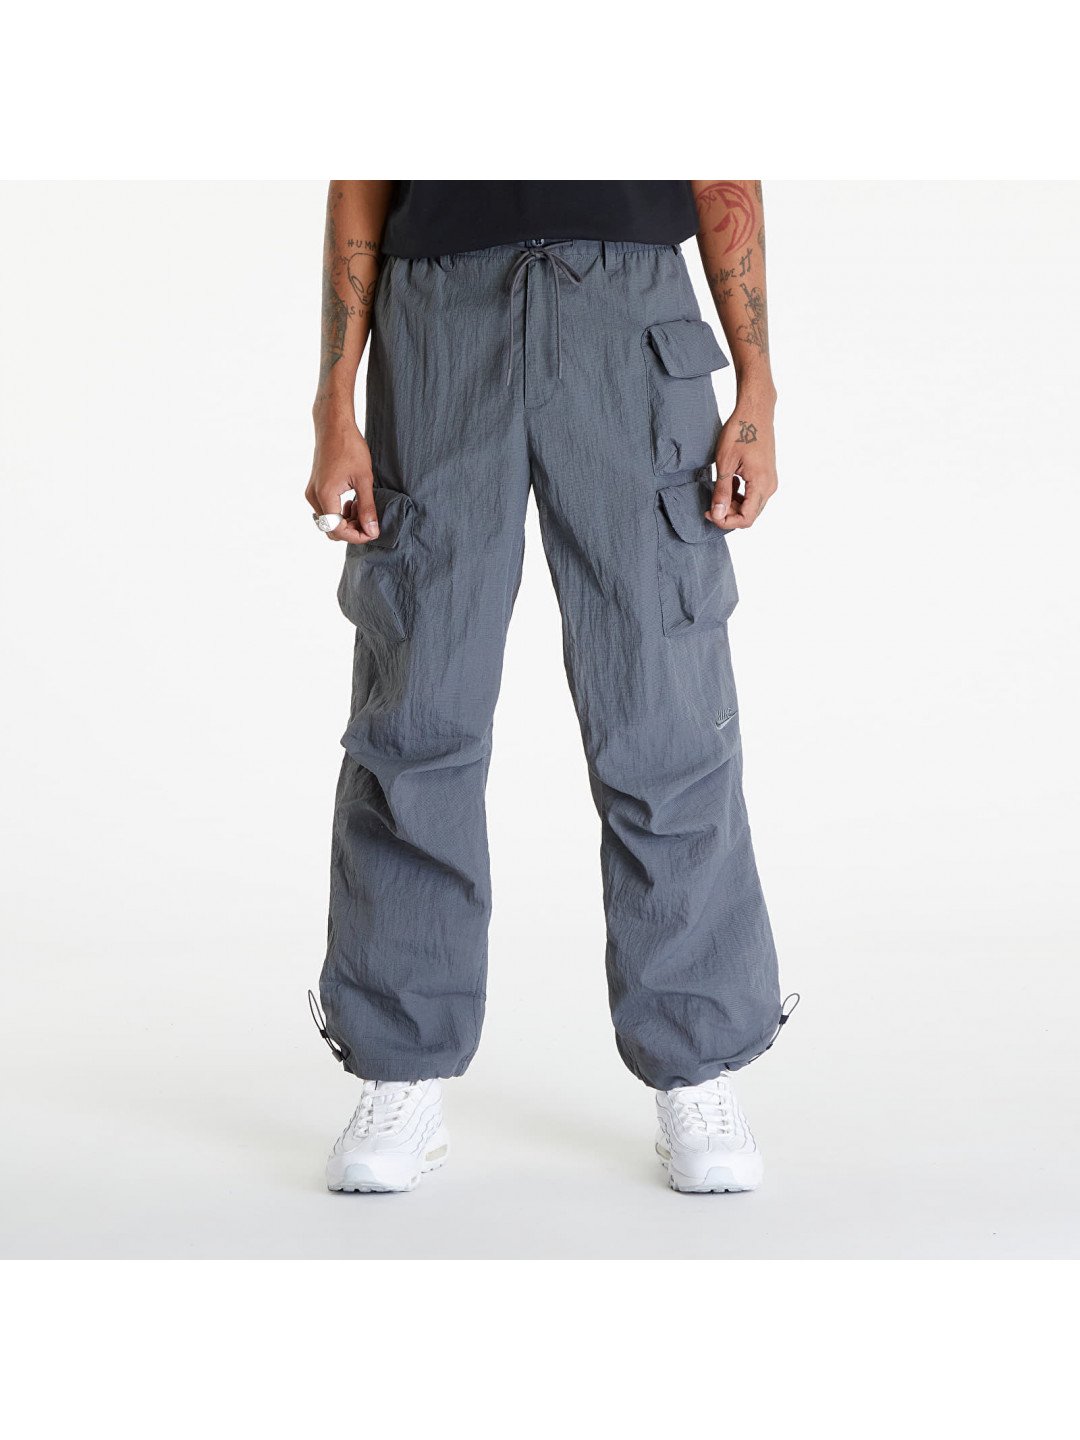 Nike Sportswear Tech Pack Men s Woven Mesh Pants Iron Grey Iron Grey